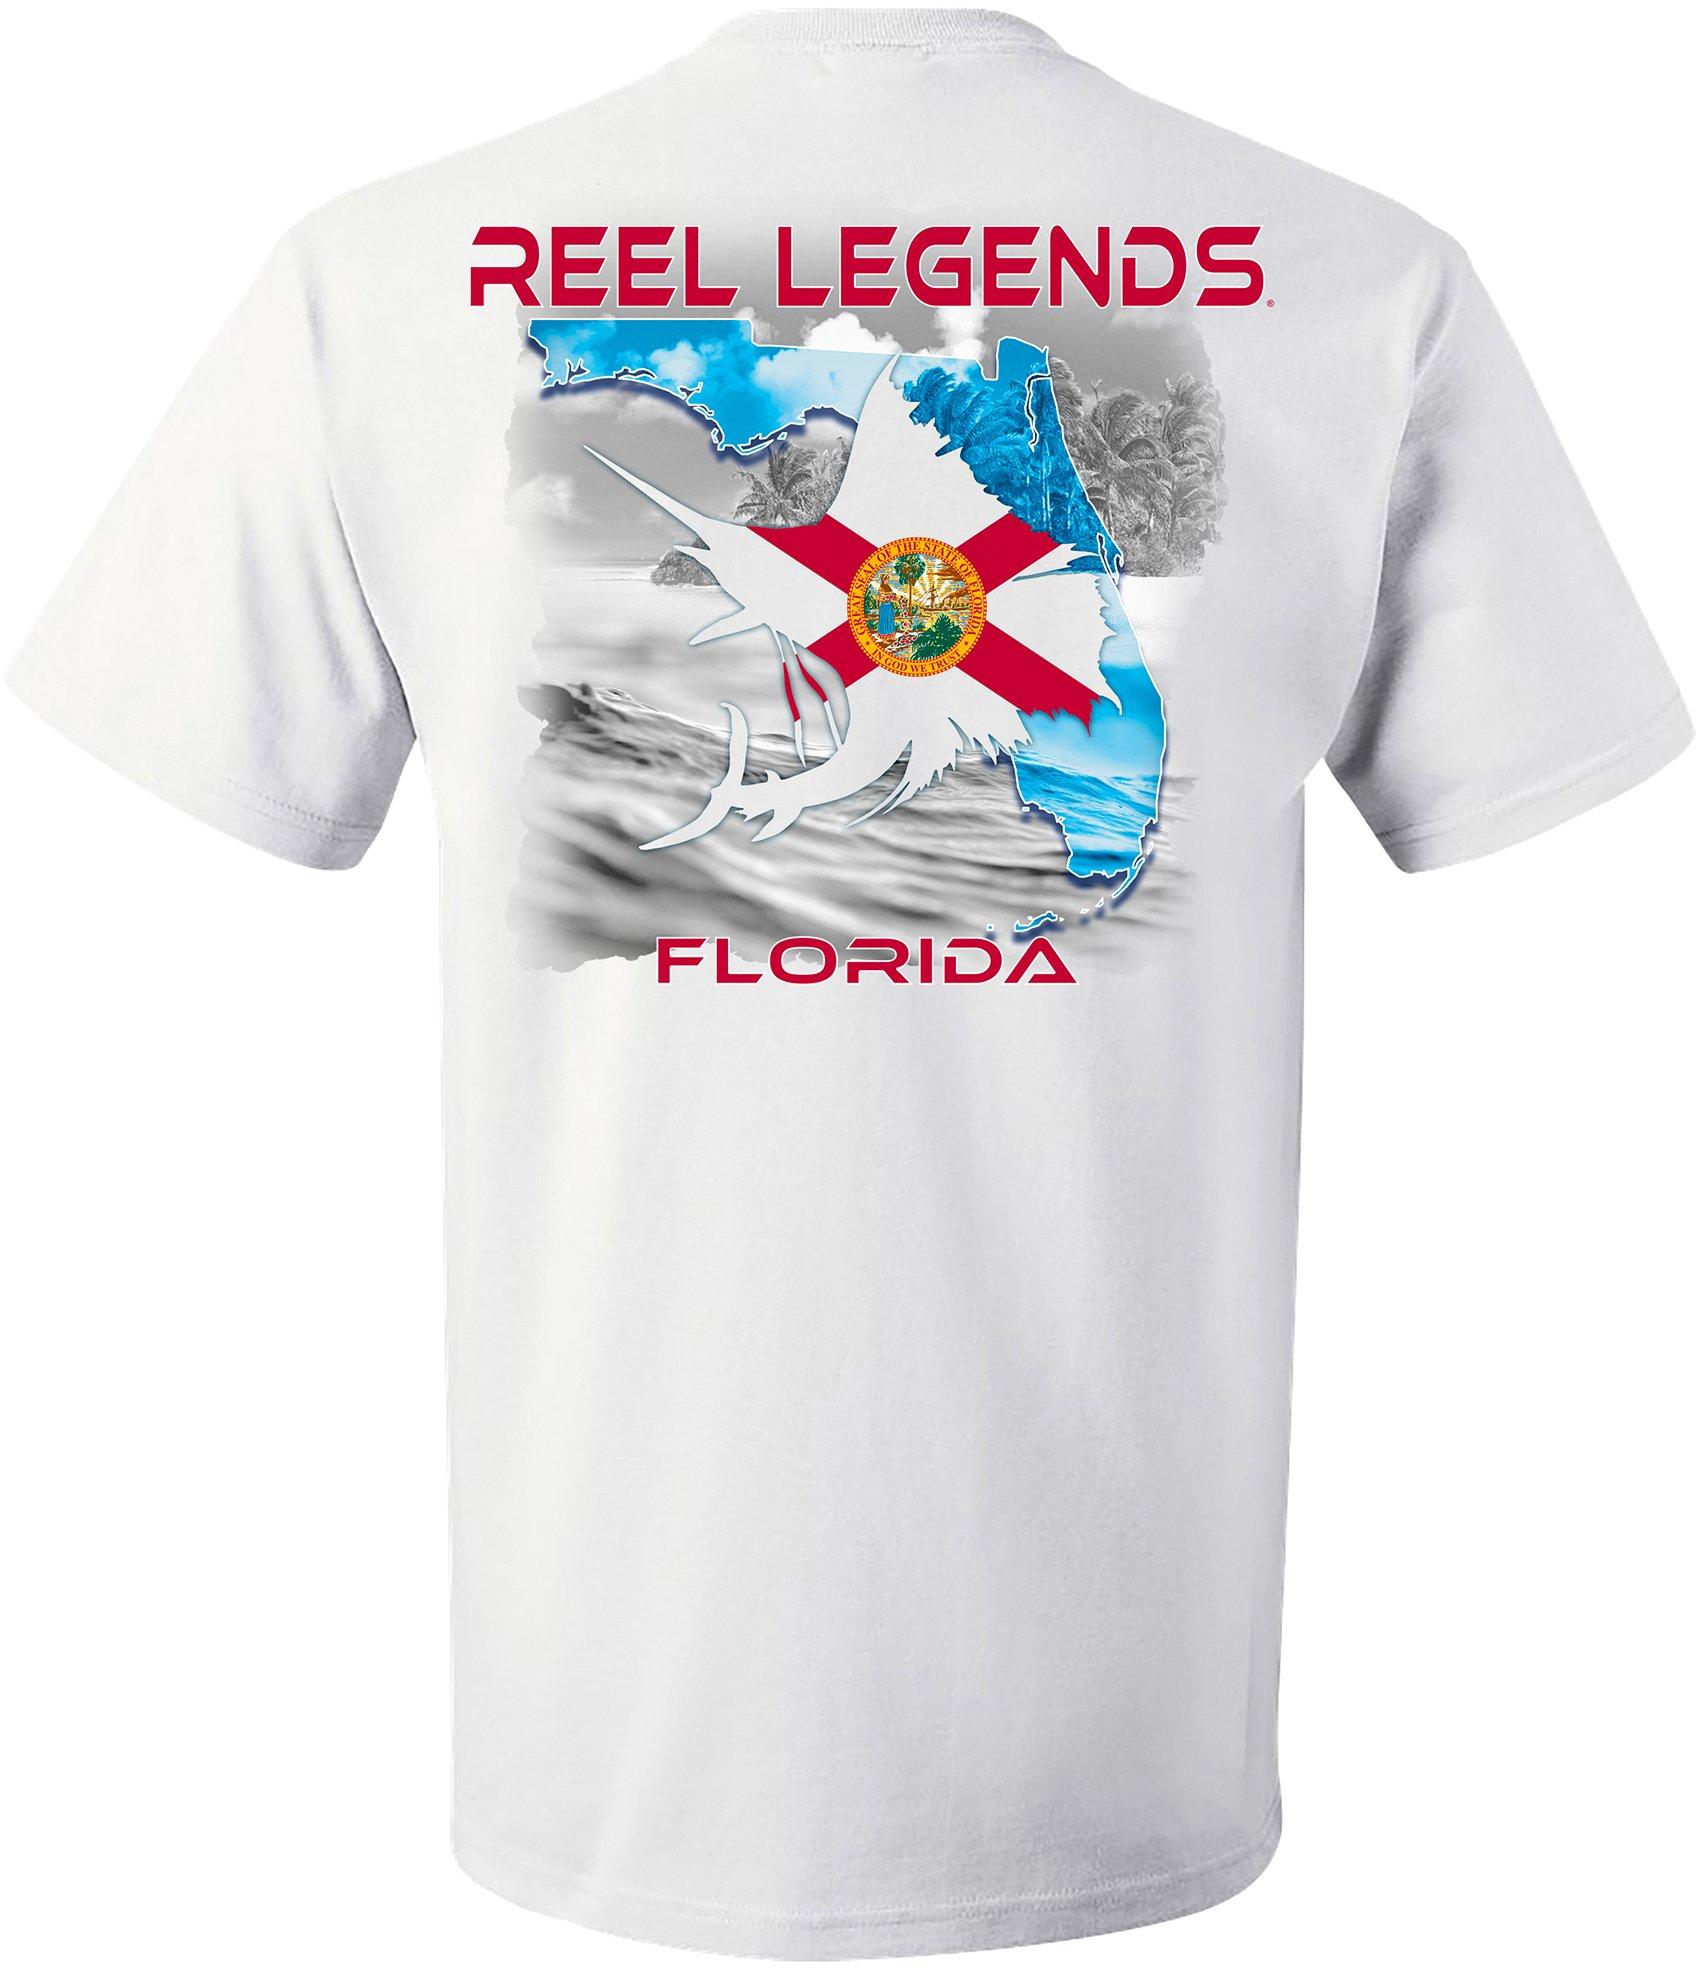 Bealls Stores: It's Reel Legends Week!